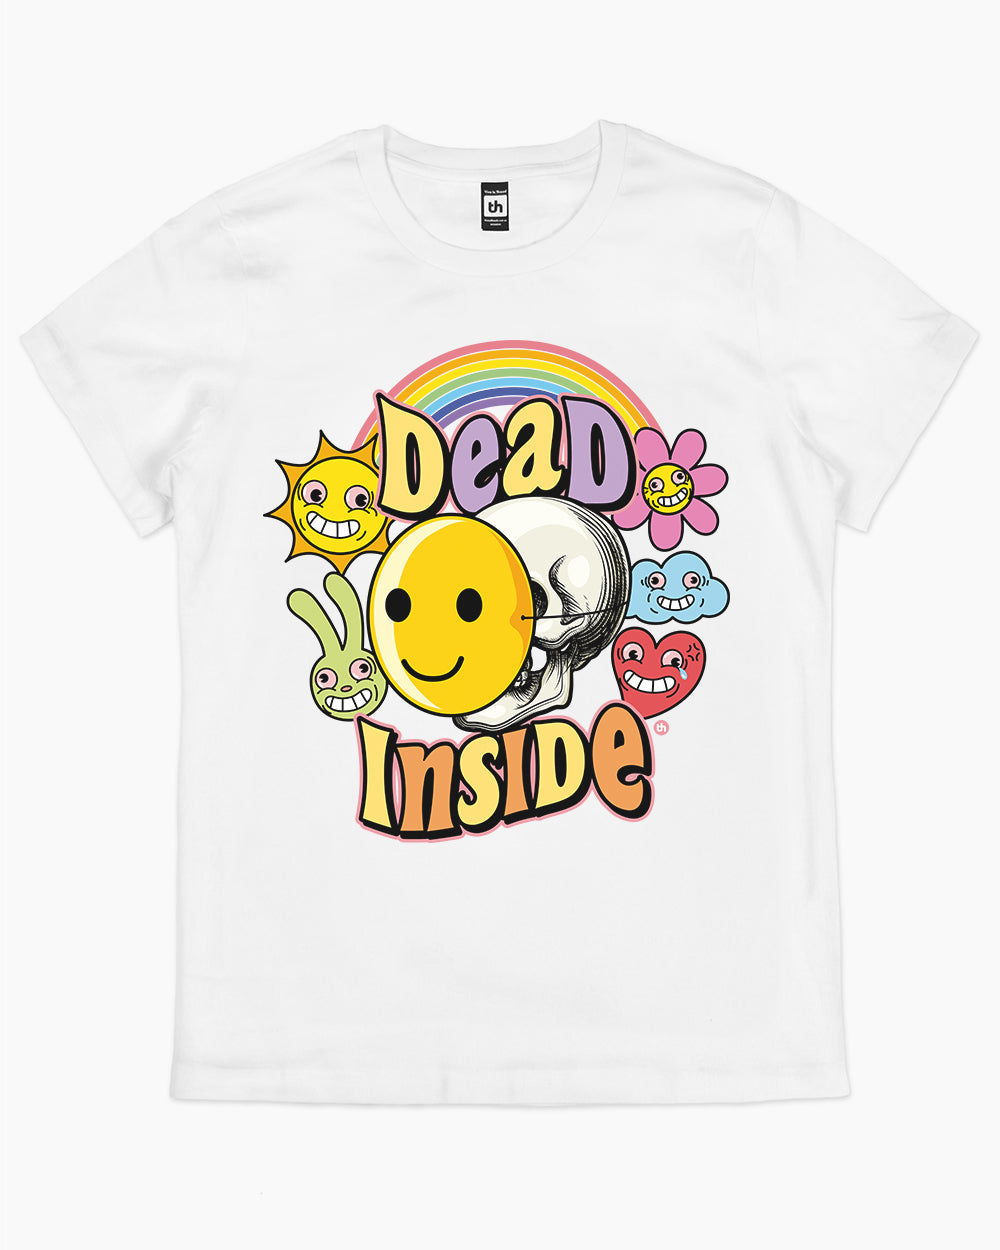 Dead Inside T-Shirt Australia Online #colour_white